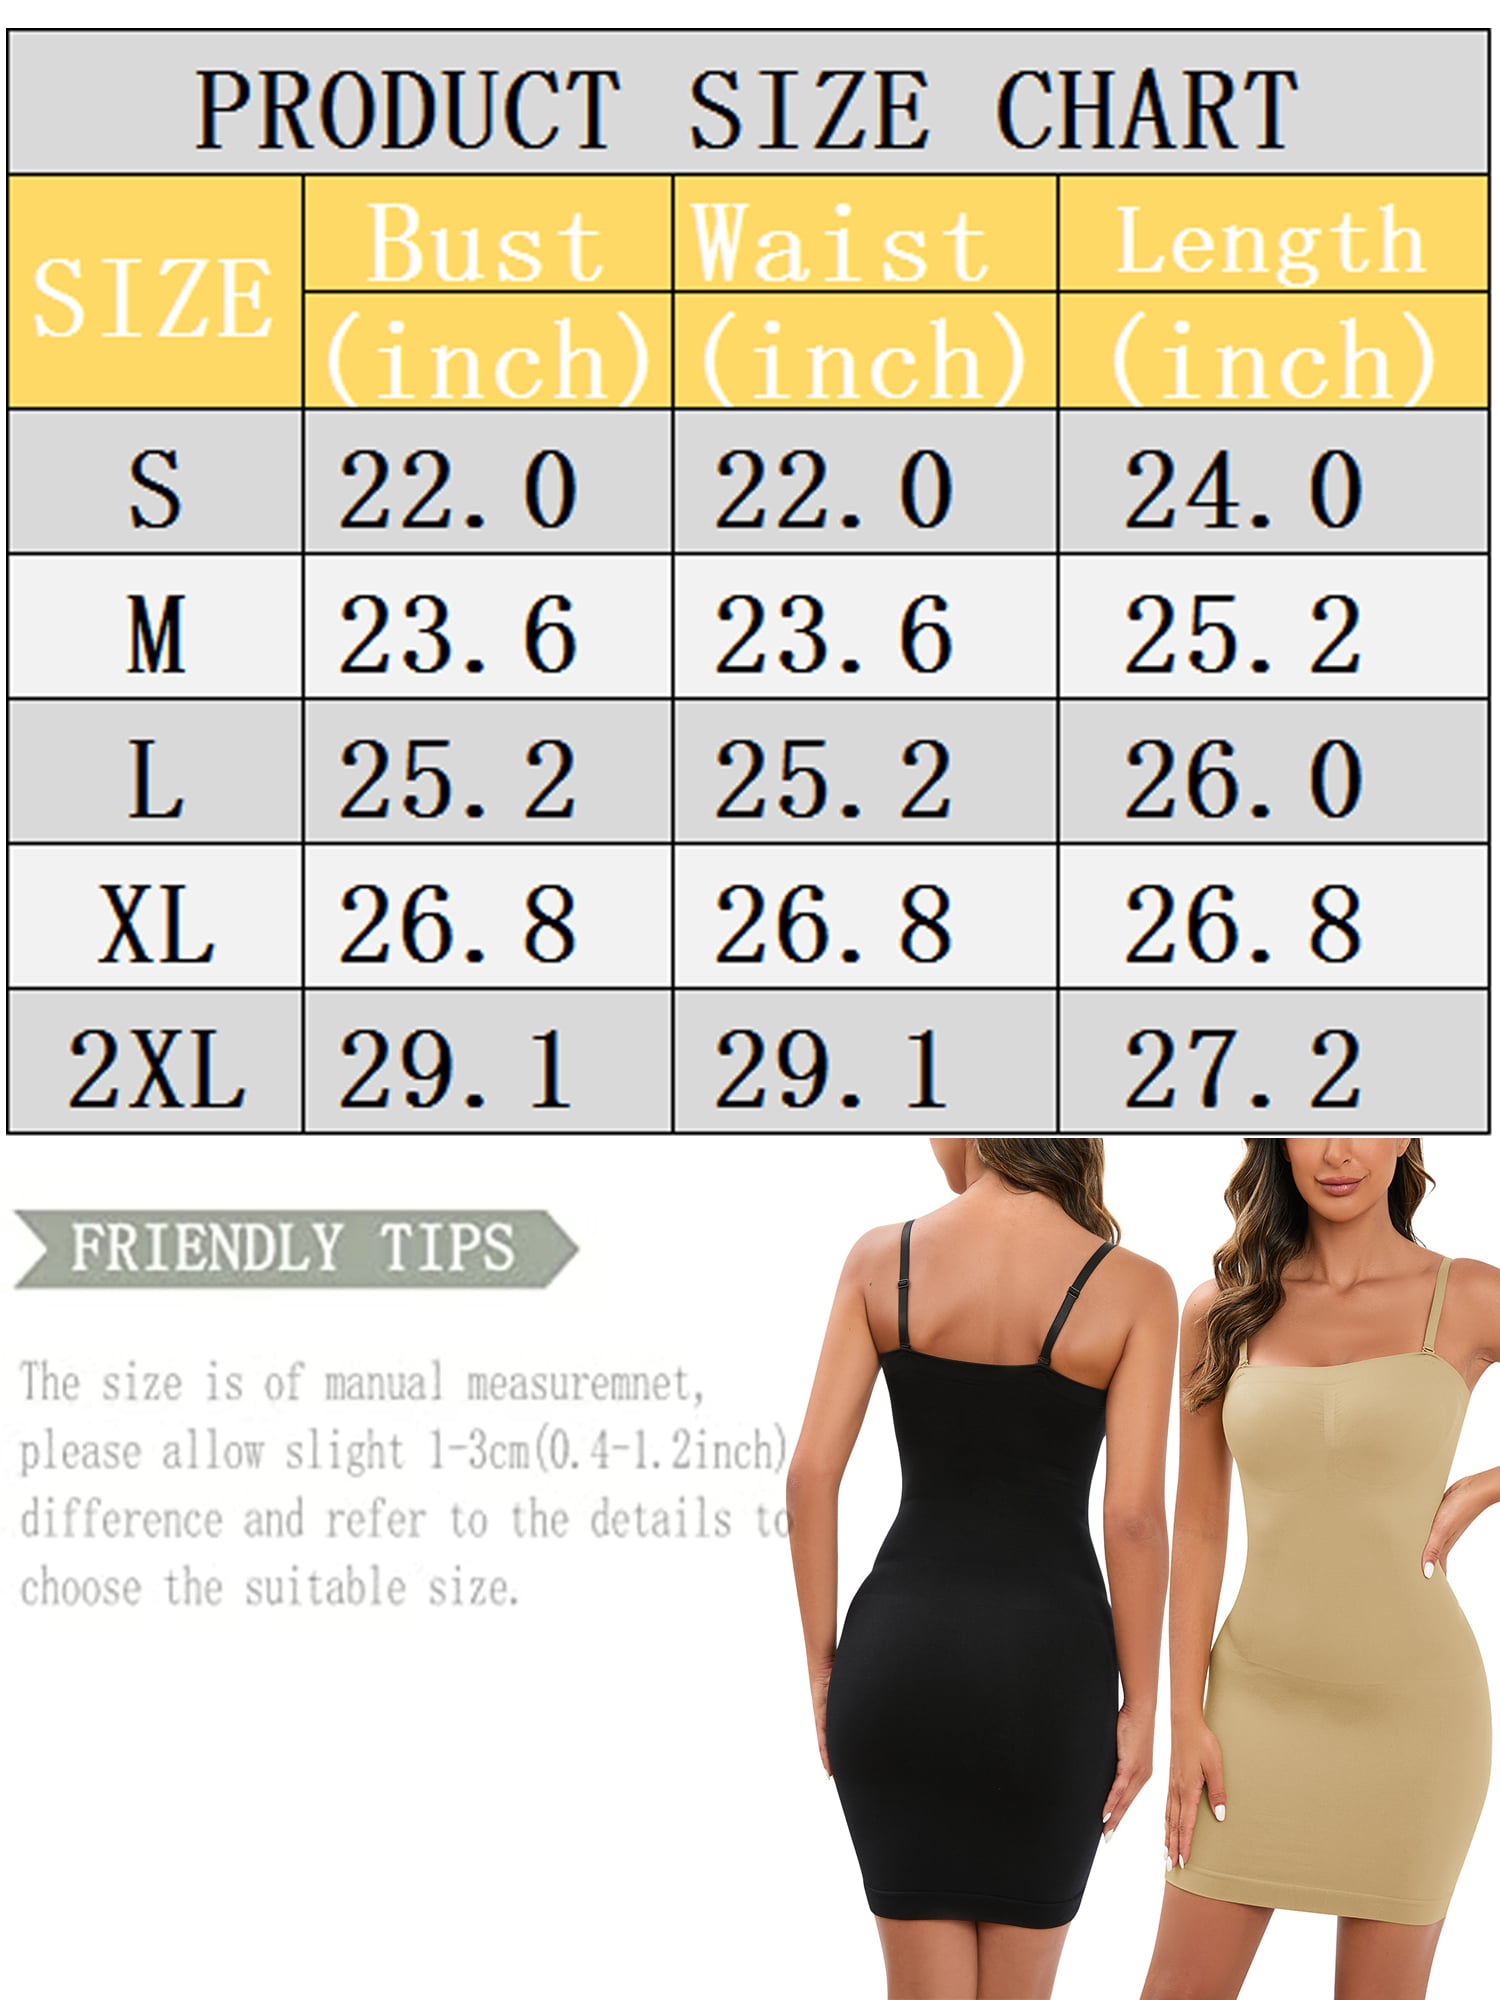 LELINTA Full Slips for Women Under Dresses Shapewear Slimming Full Shaping  Control Body Shaper Waist Trainer 